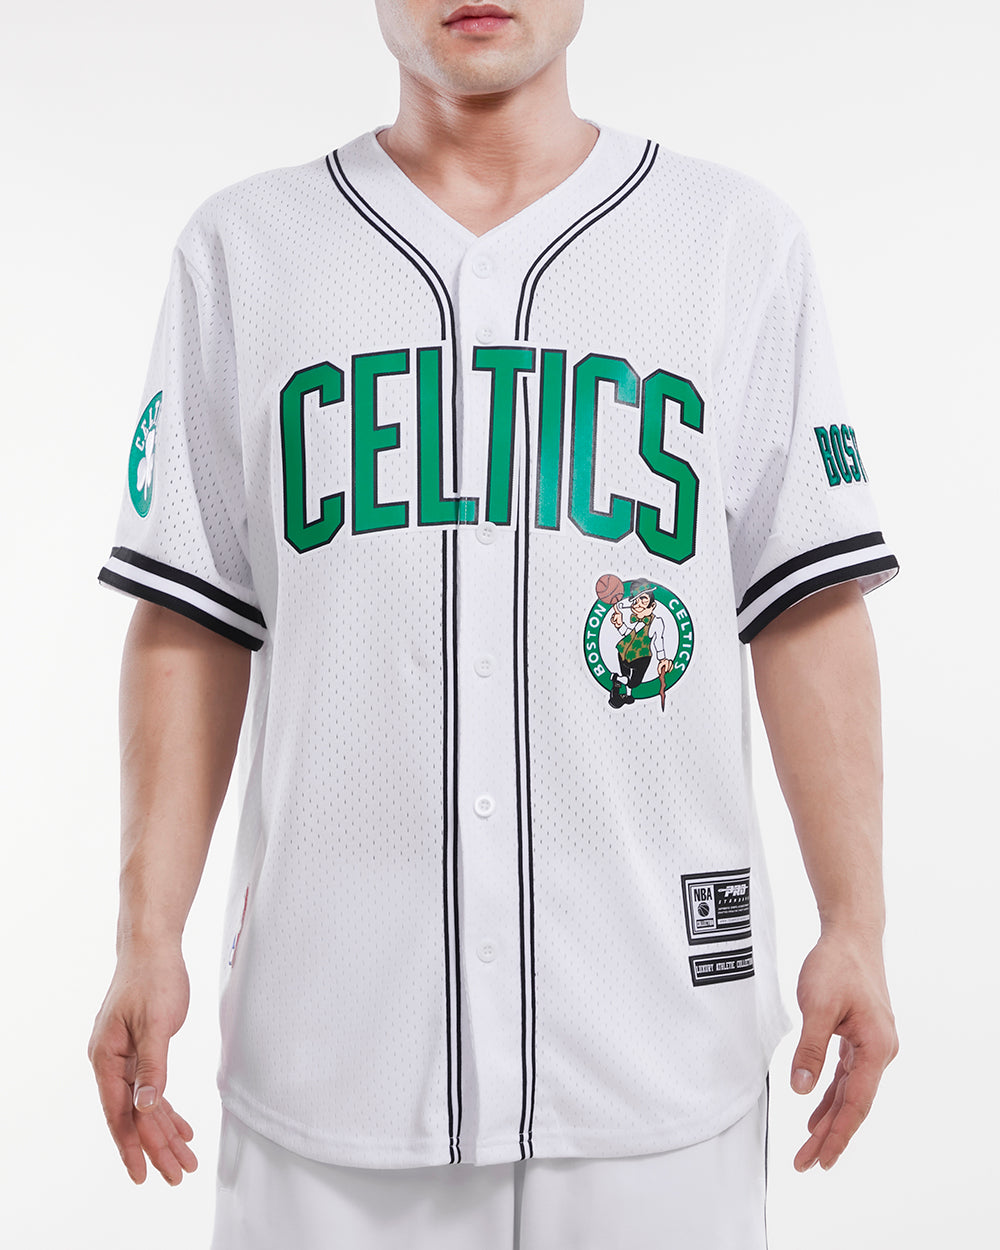 Celtics Baseball